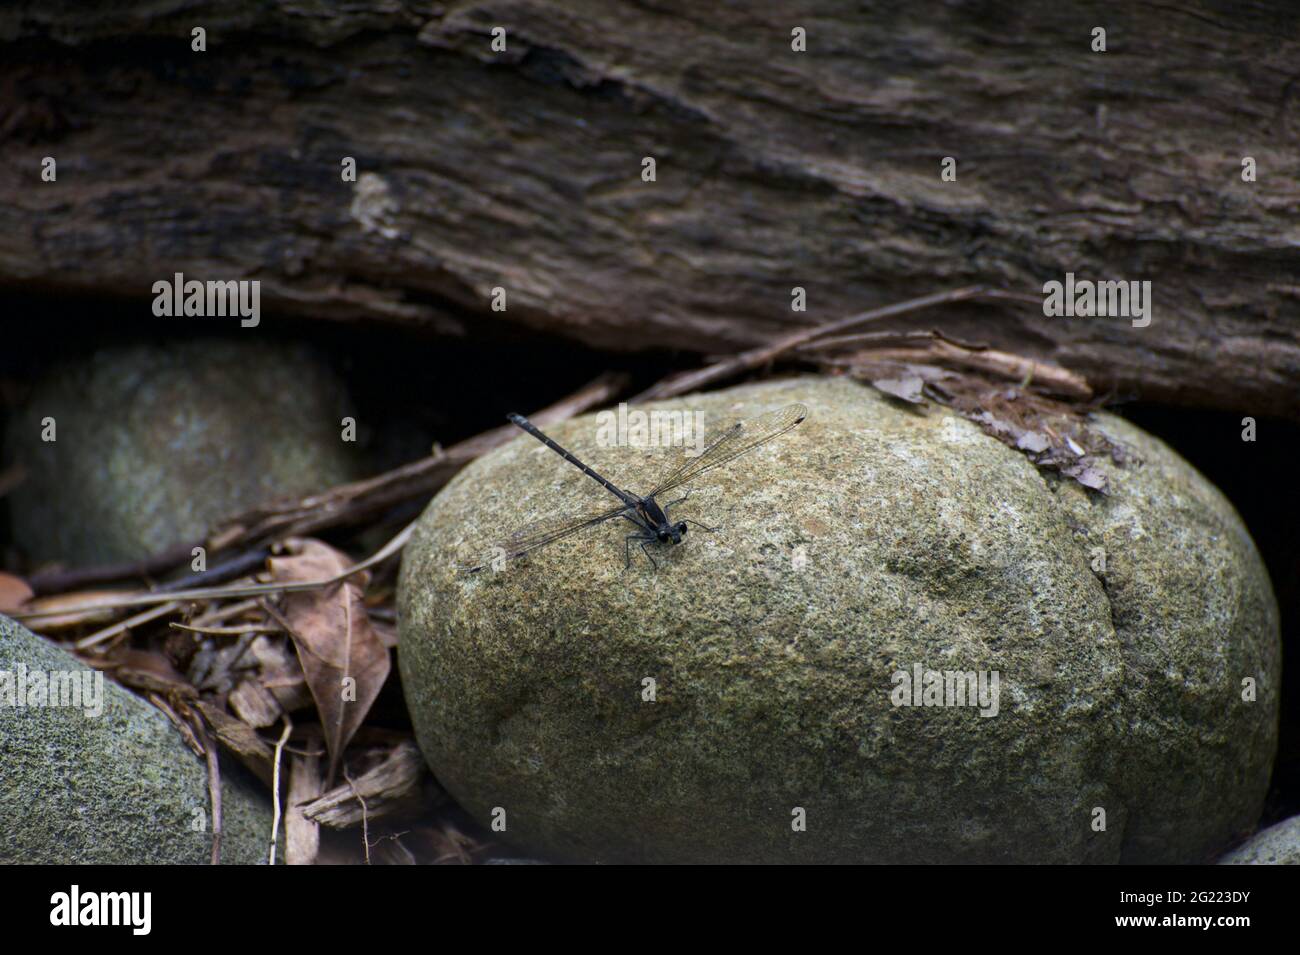 Die Dame auf dem Felsen - die Damselfliege (bestellen Odonata) sonnt sich auf dem Felsen, in der Nähe eines Baches. Diese Raubtiere ernähren sich von anderen Insekten, insbesondere von Mücken. Stockfoto